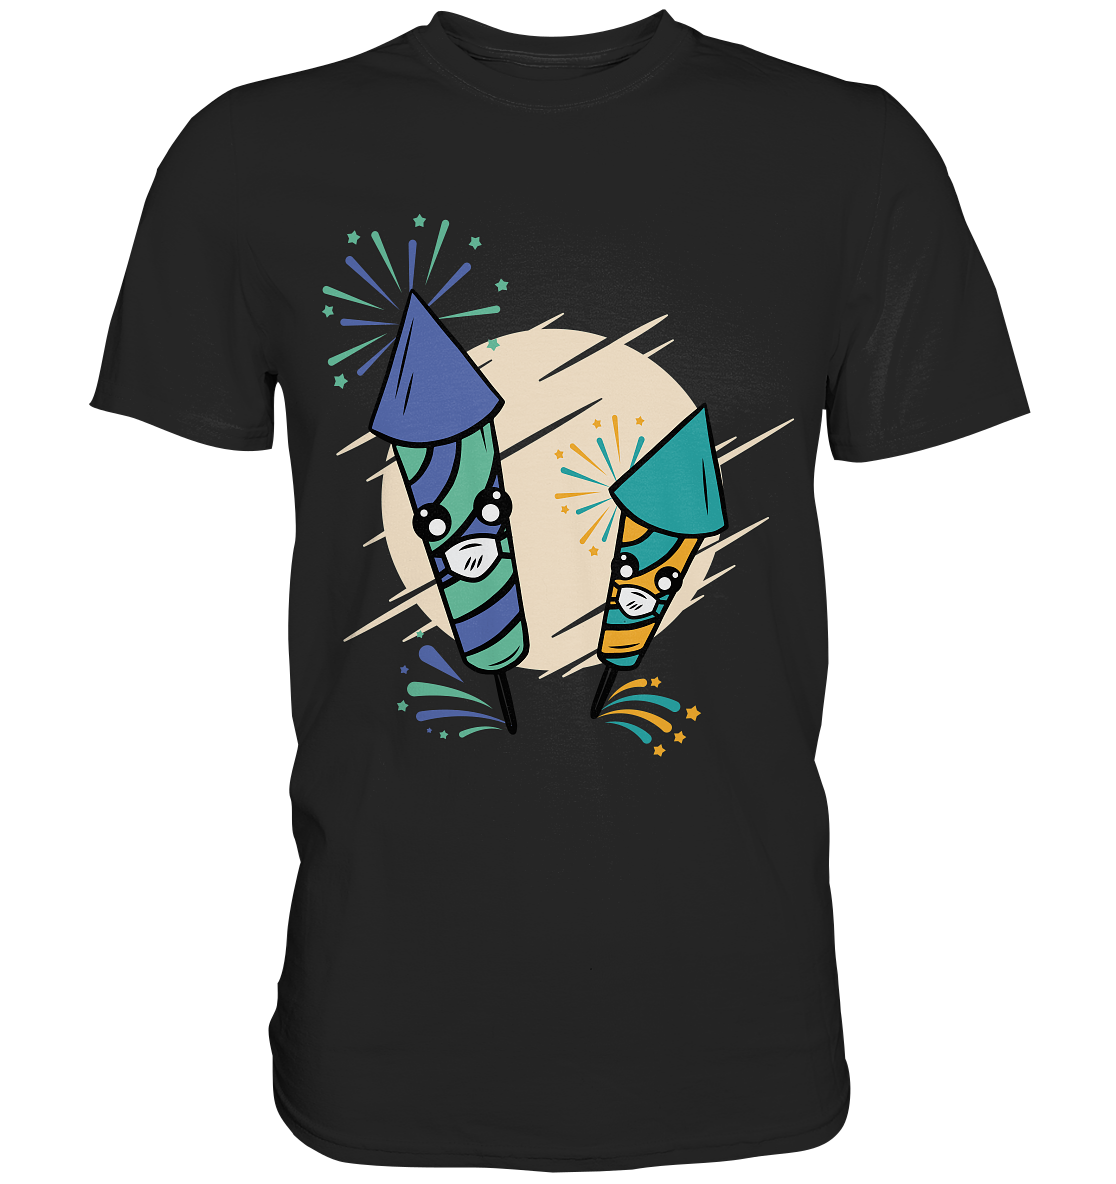 Feuerwerks T-Shirt , Silvester , Böller , T-Shirt für ein Feuerwerksfan - Premium Shirt